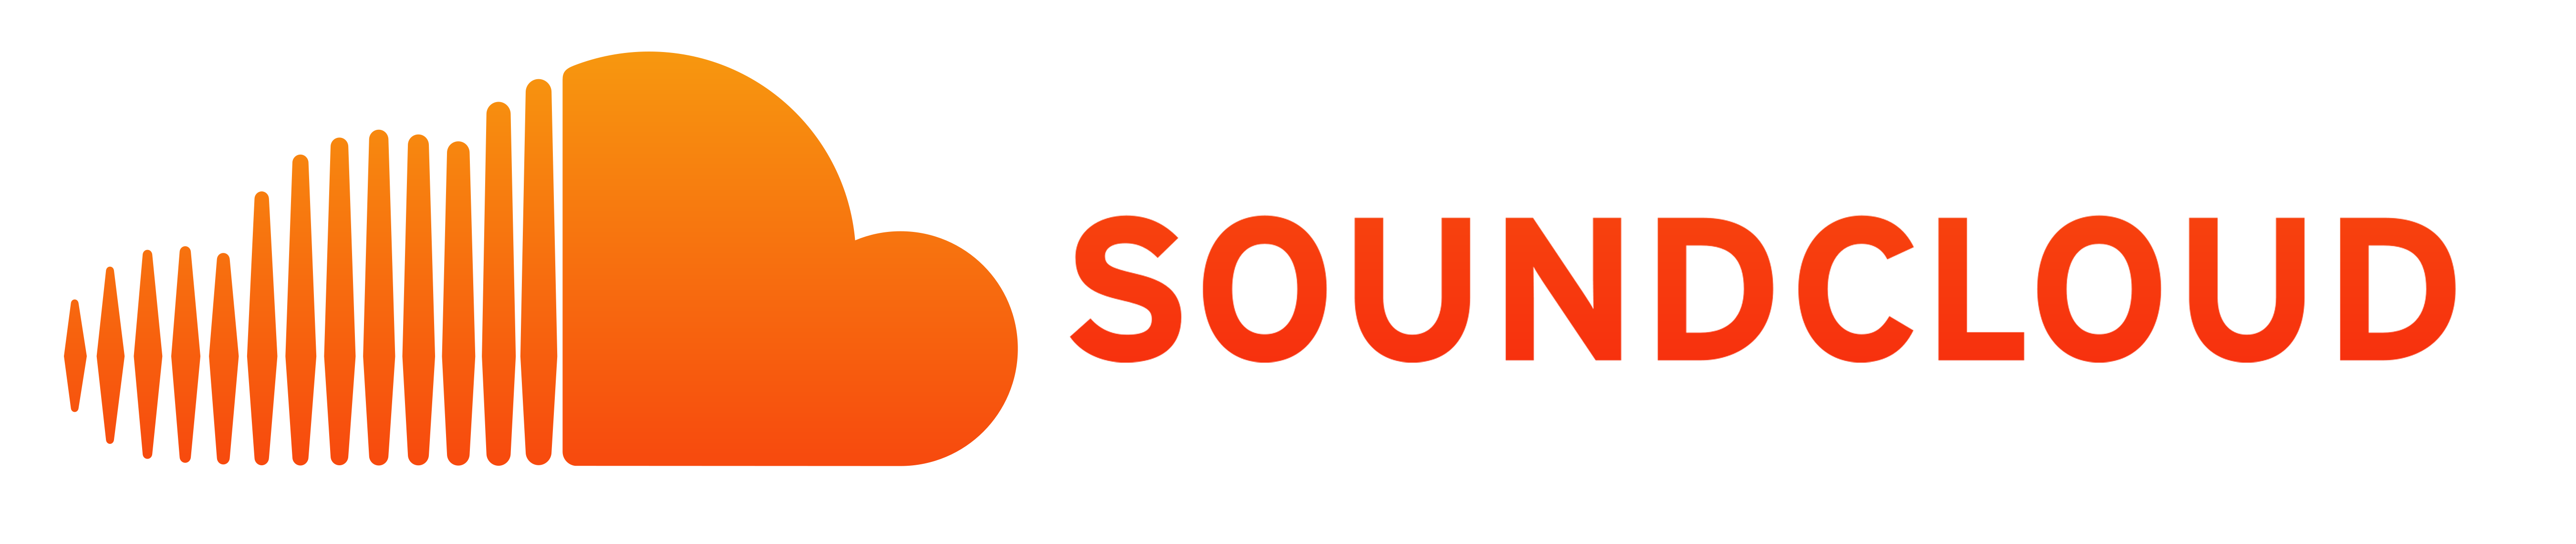 Hörensie Unterwegs Neue Klänge Mit Soundcloud.